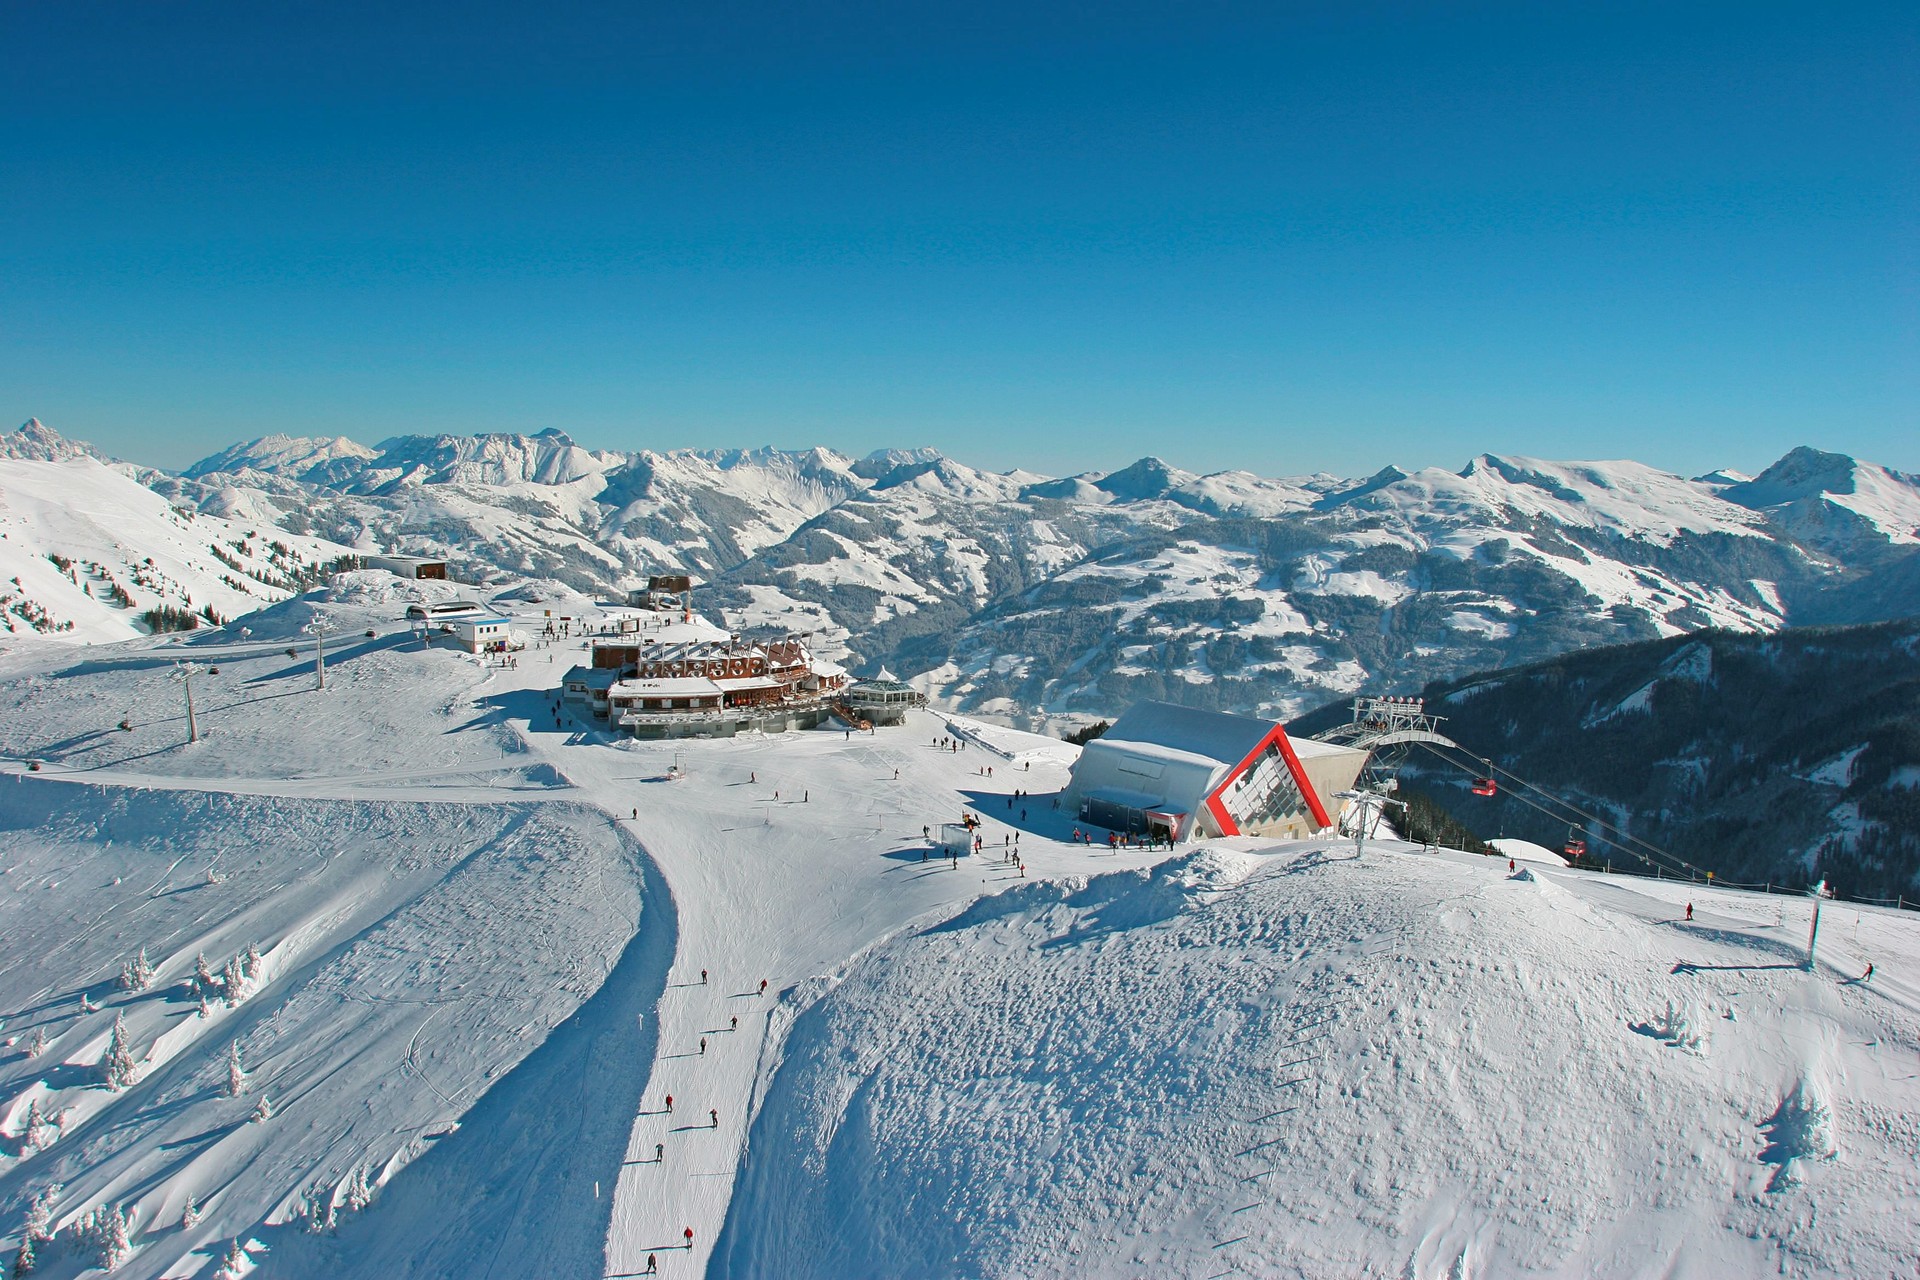 Wintersport Kitzbühel 173 km skiplezier rondom het dorp